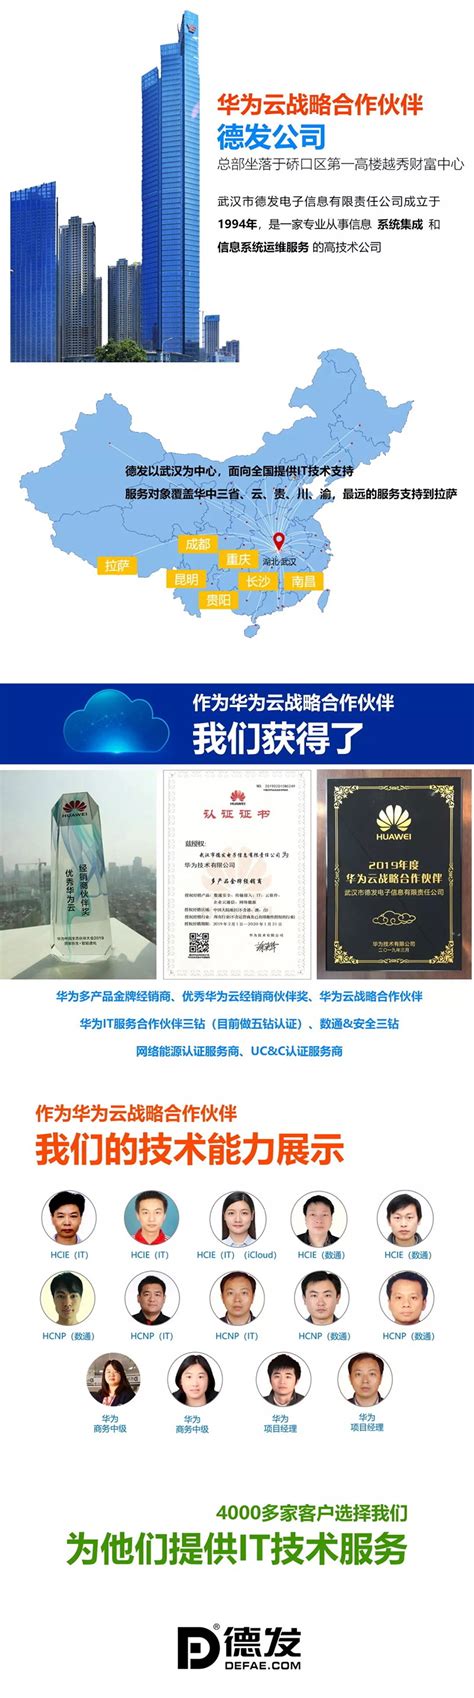 2018全球信息技术主管大会在西咸新区隆重举行！武汉企业信息化促进会组织获评单位参加“年度优秀首席信息官”颁奖盛典！_融合